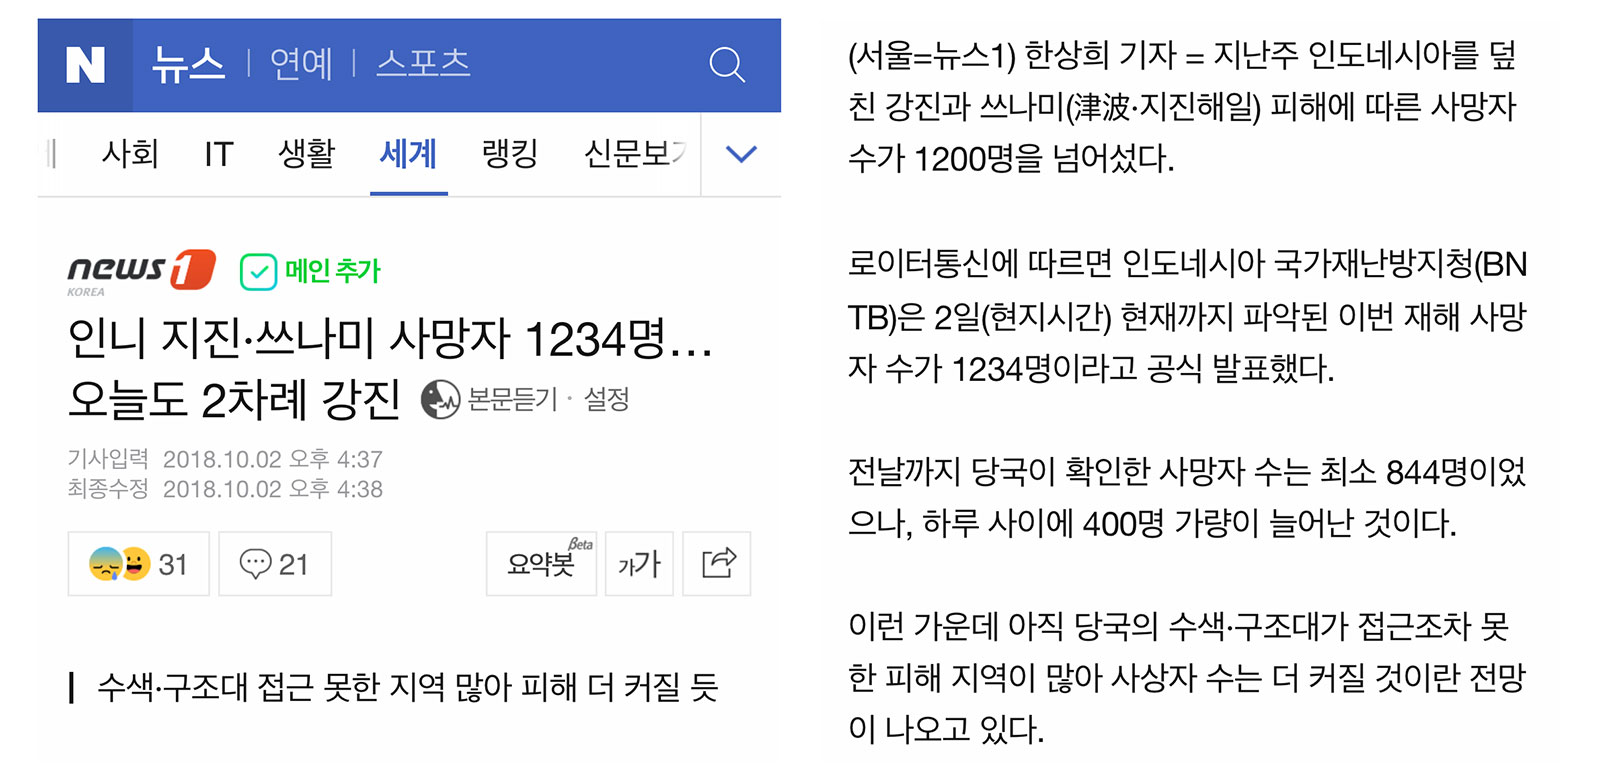 Naver news